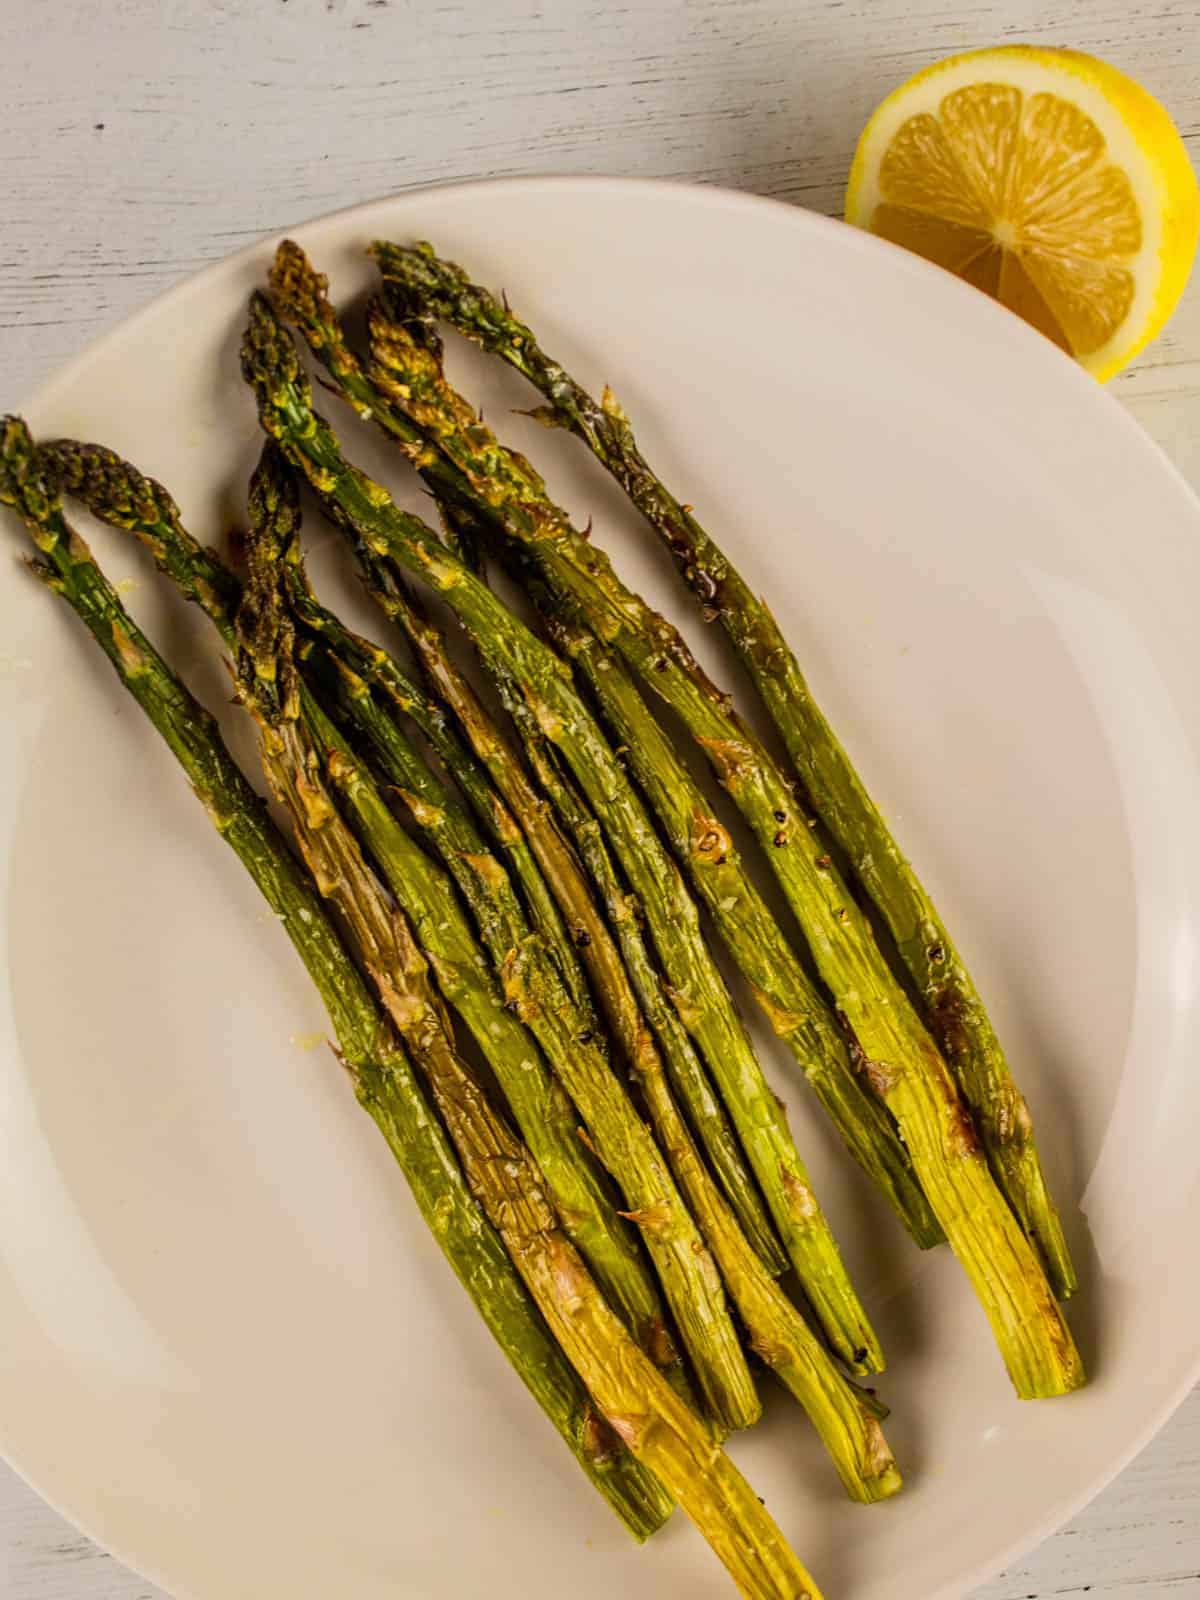 baked asparagus with lemon on a plate